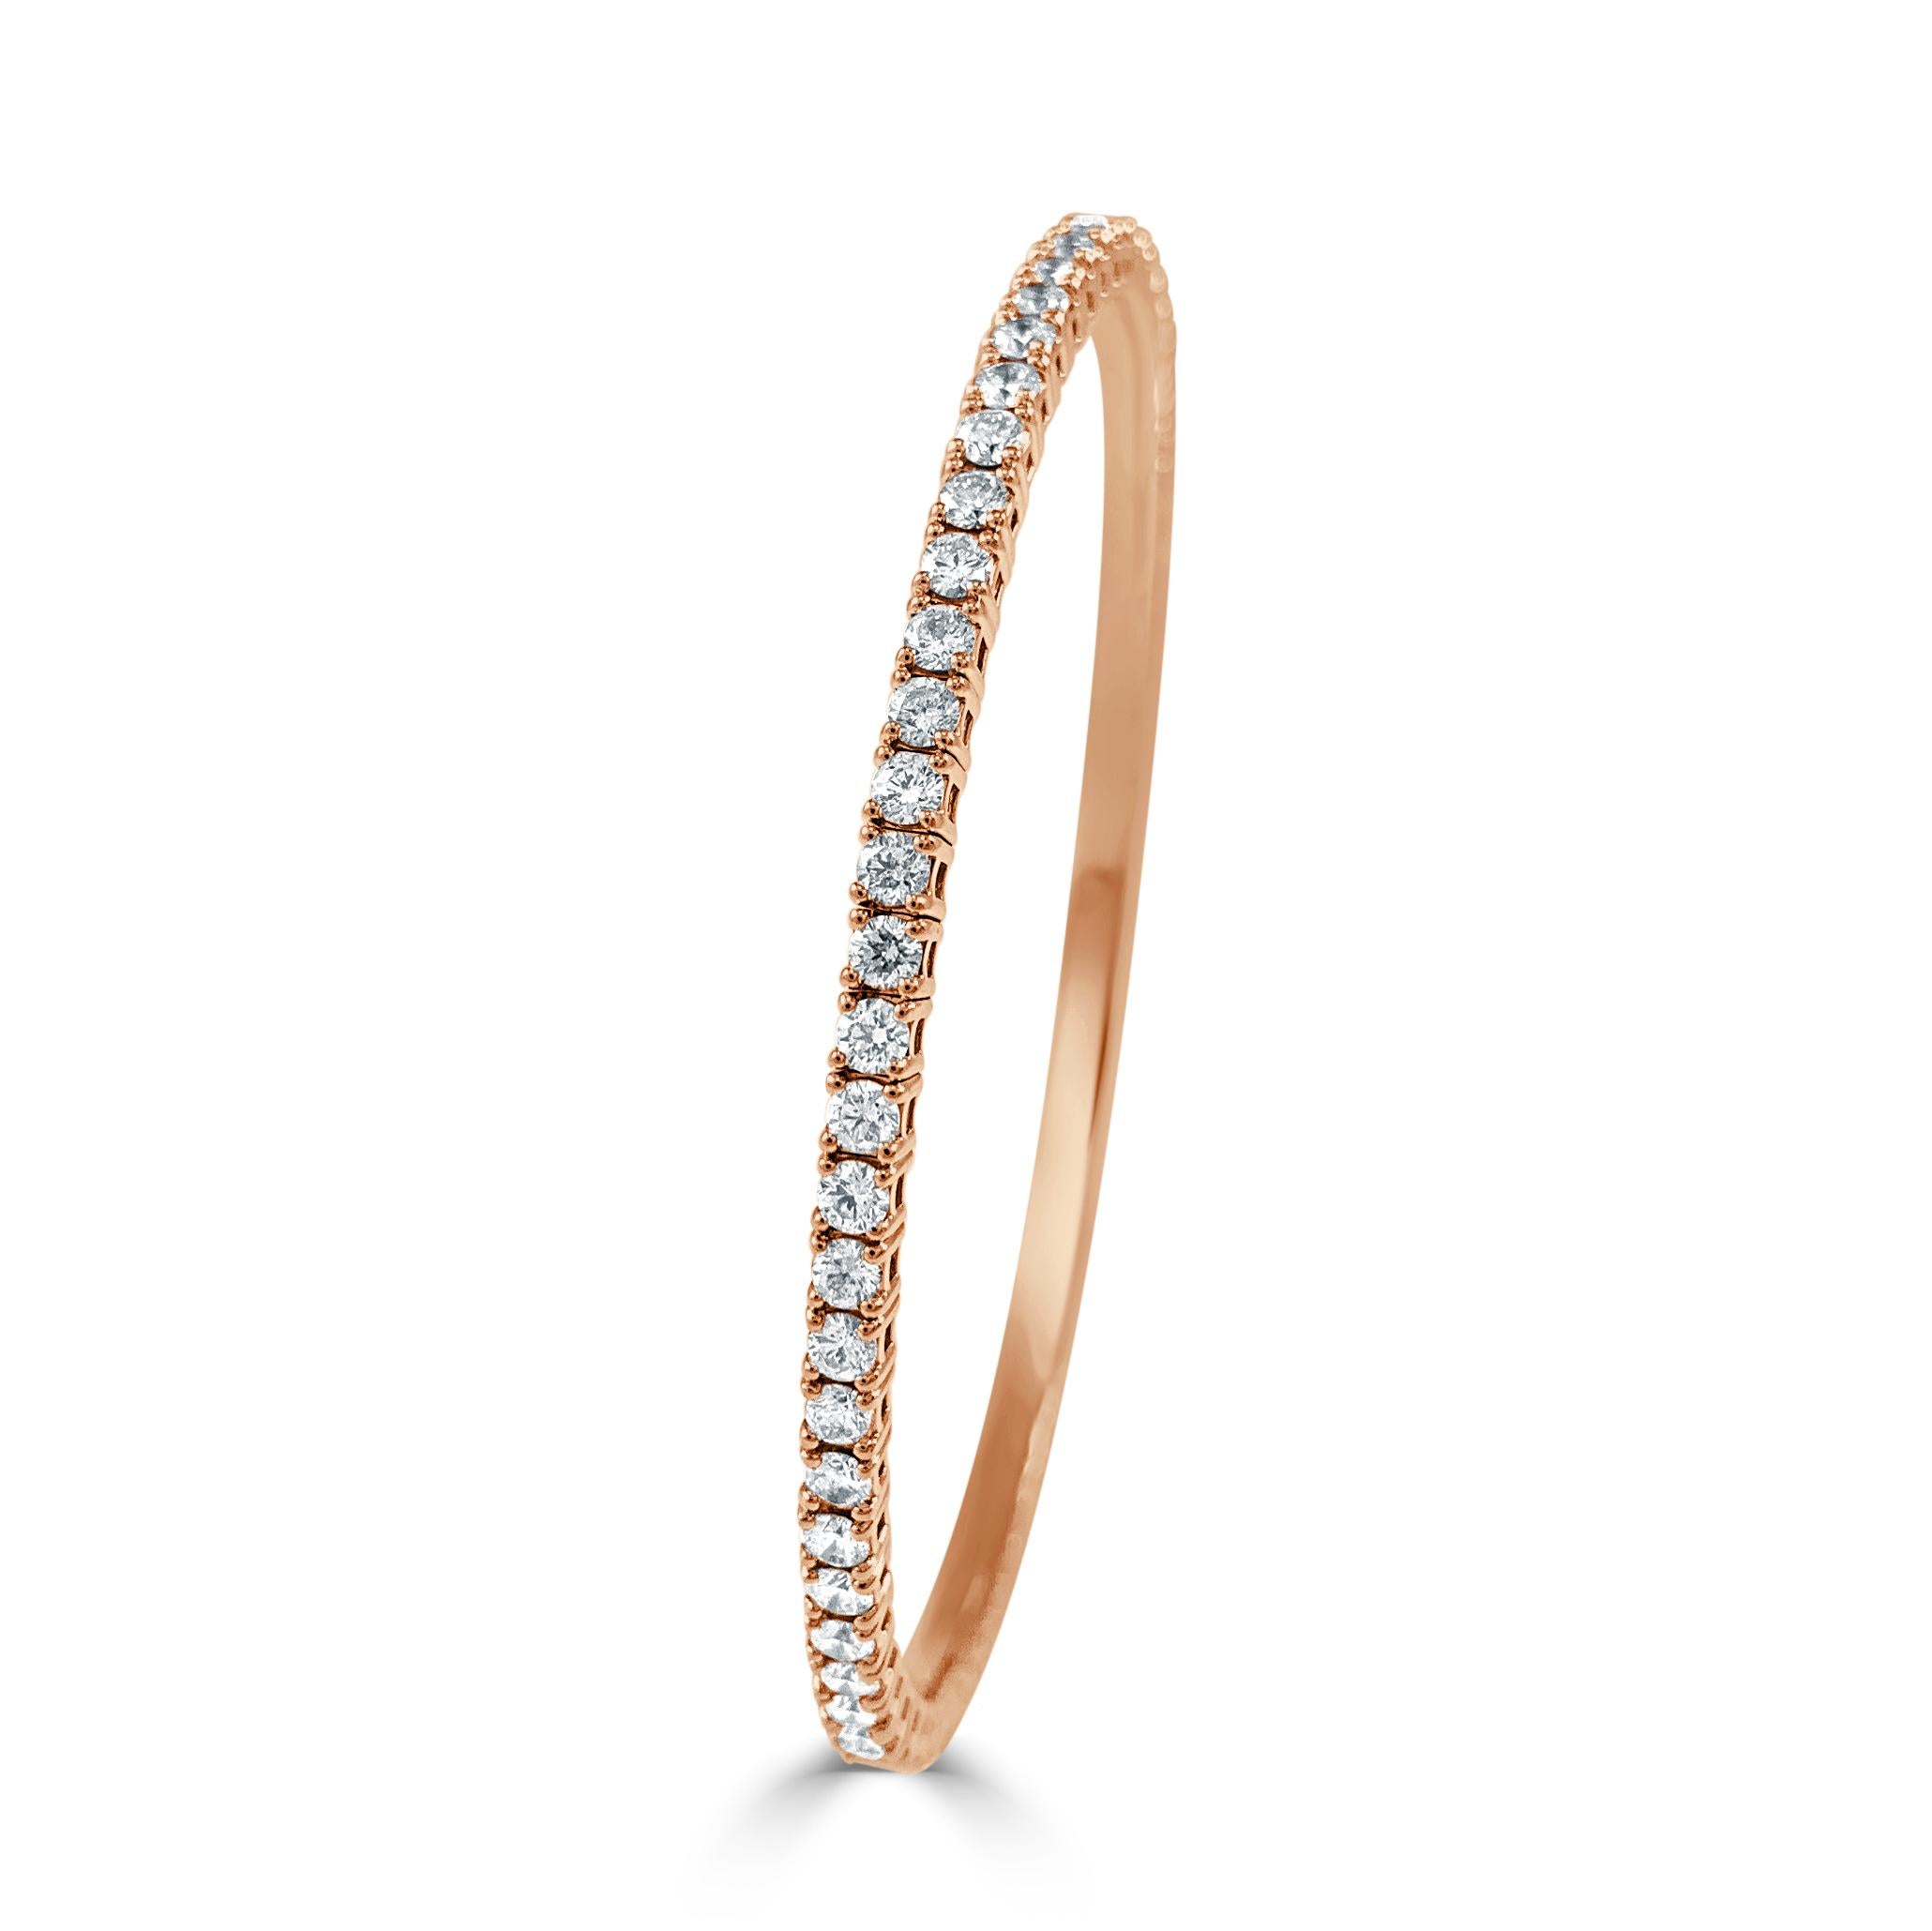 Bracelet flexible de qualité : Fabriqué en or véritable 14k et 60 pierres blanches scintillantes d'environ 3,02 ct. Diamants certifiés, présentant une seule rangée de diamants blancs de diamètre flexible pour le confort, avec une couleur et une